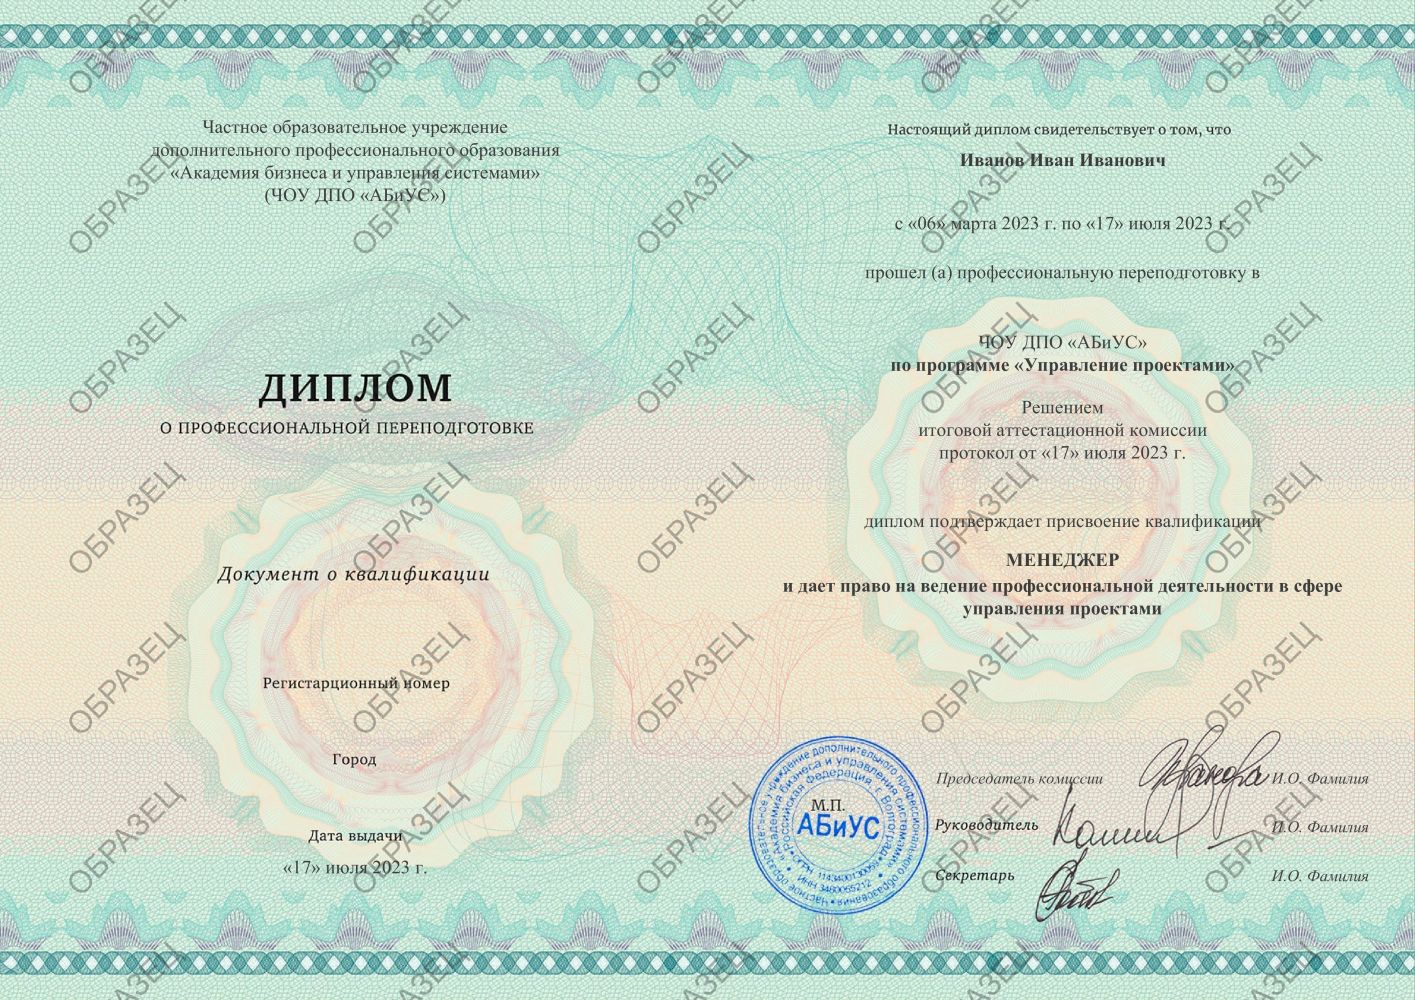 Диплом Управление проектами 510 часов 17250 руб.